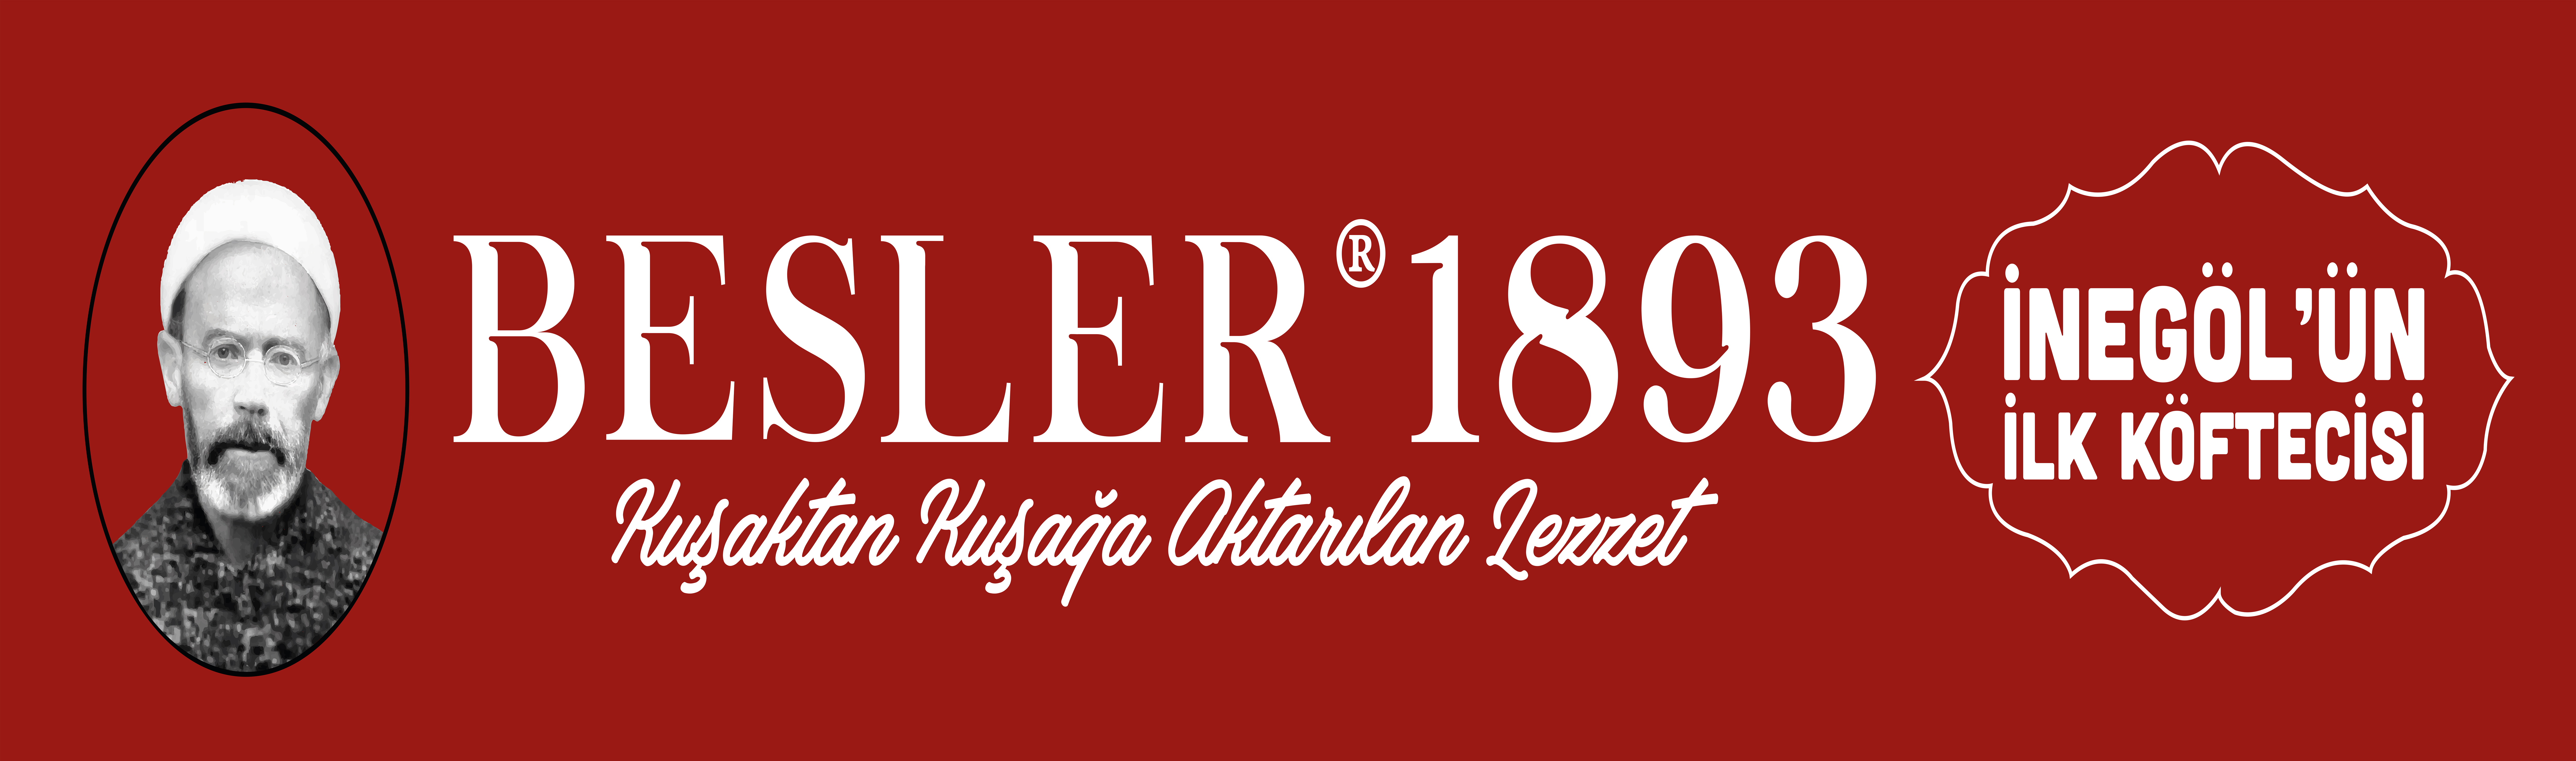 Besler1893-1